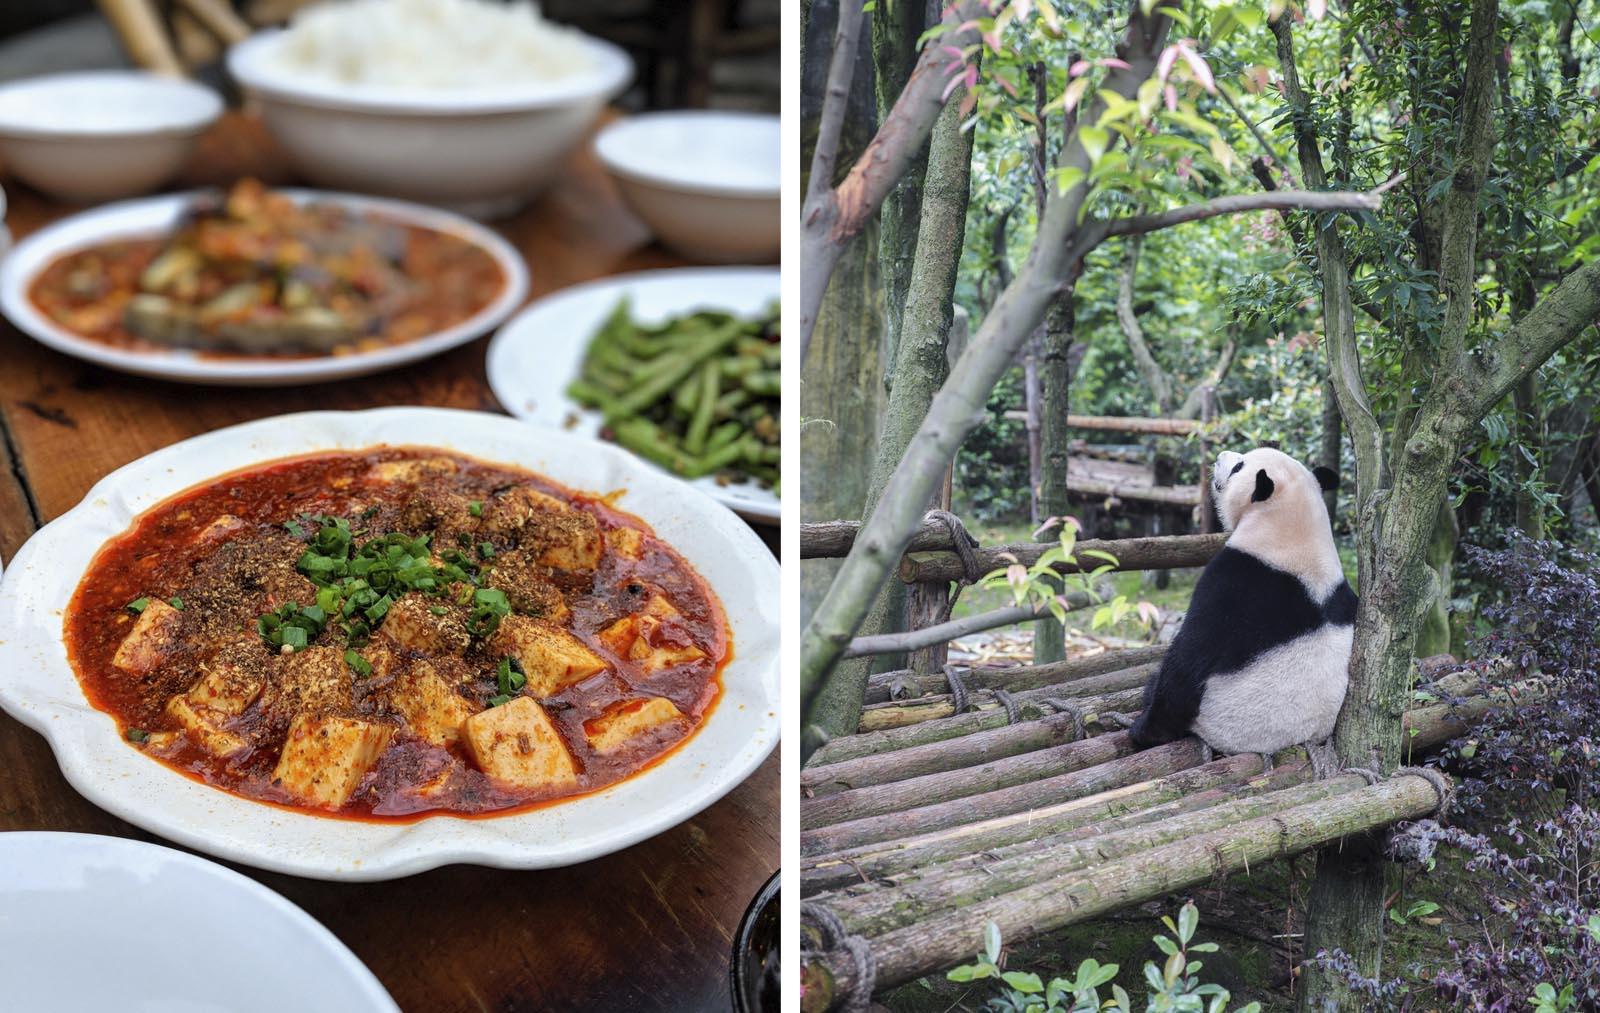 Chengdu mapo tofu dish and panda